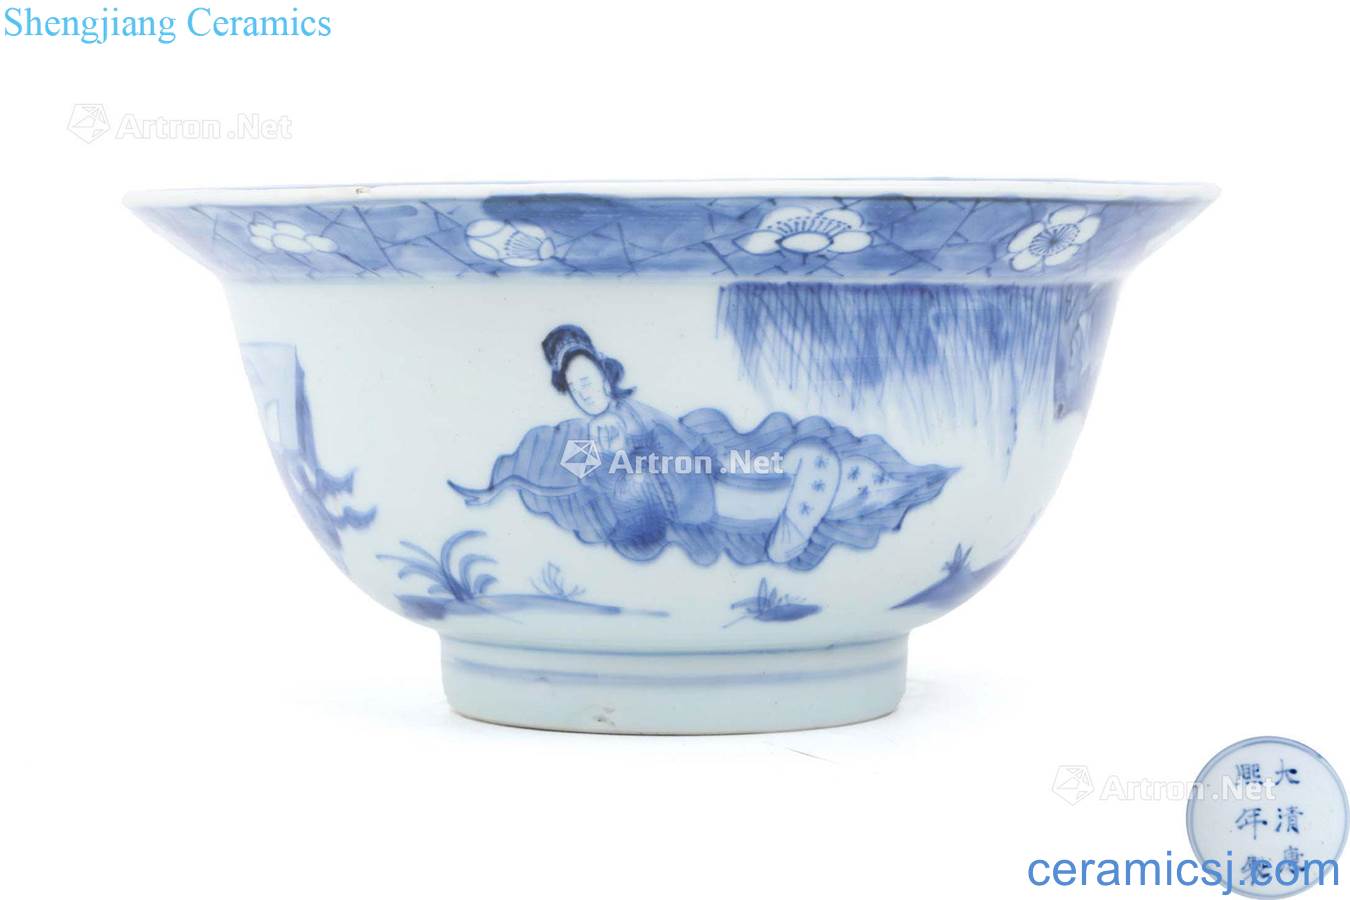 However, the qing emperor kangxi porcelain design green-splashed bowls